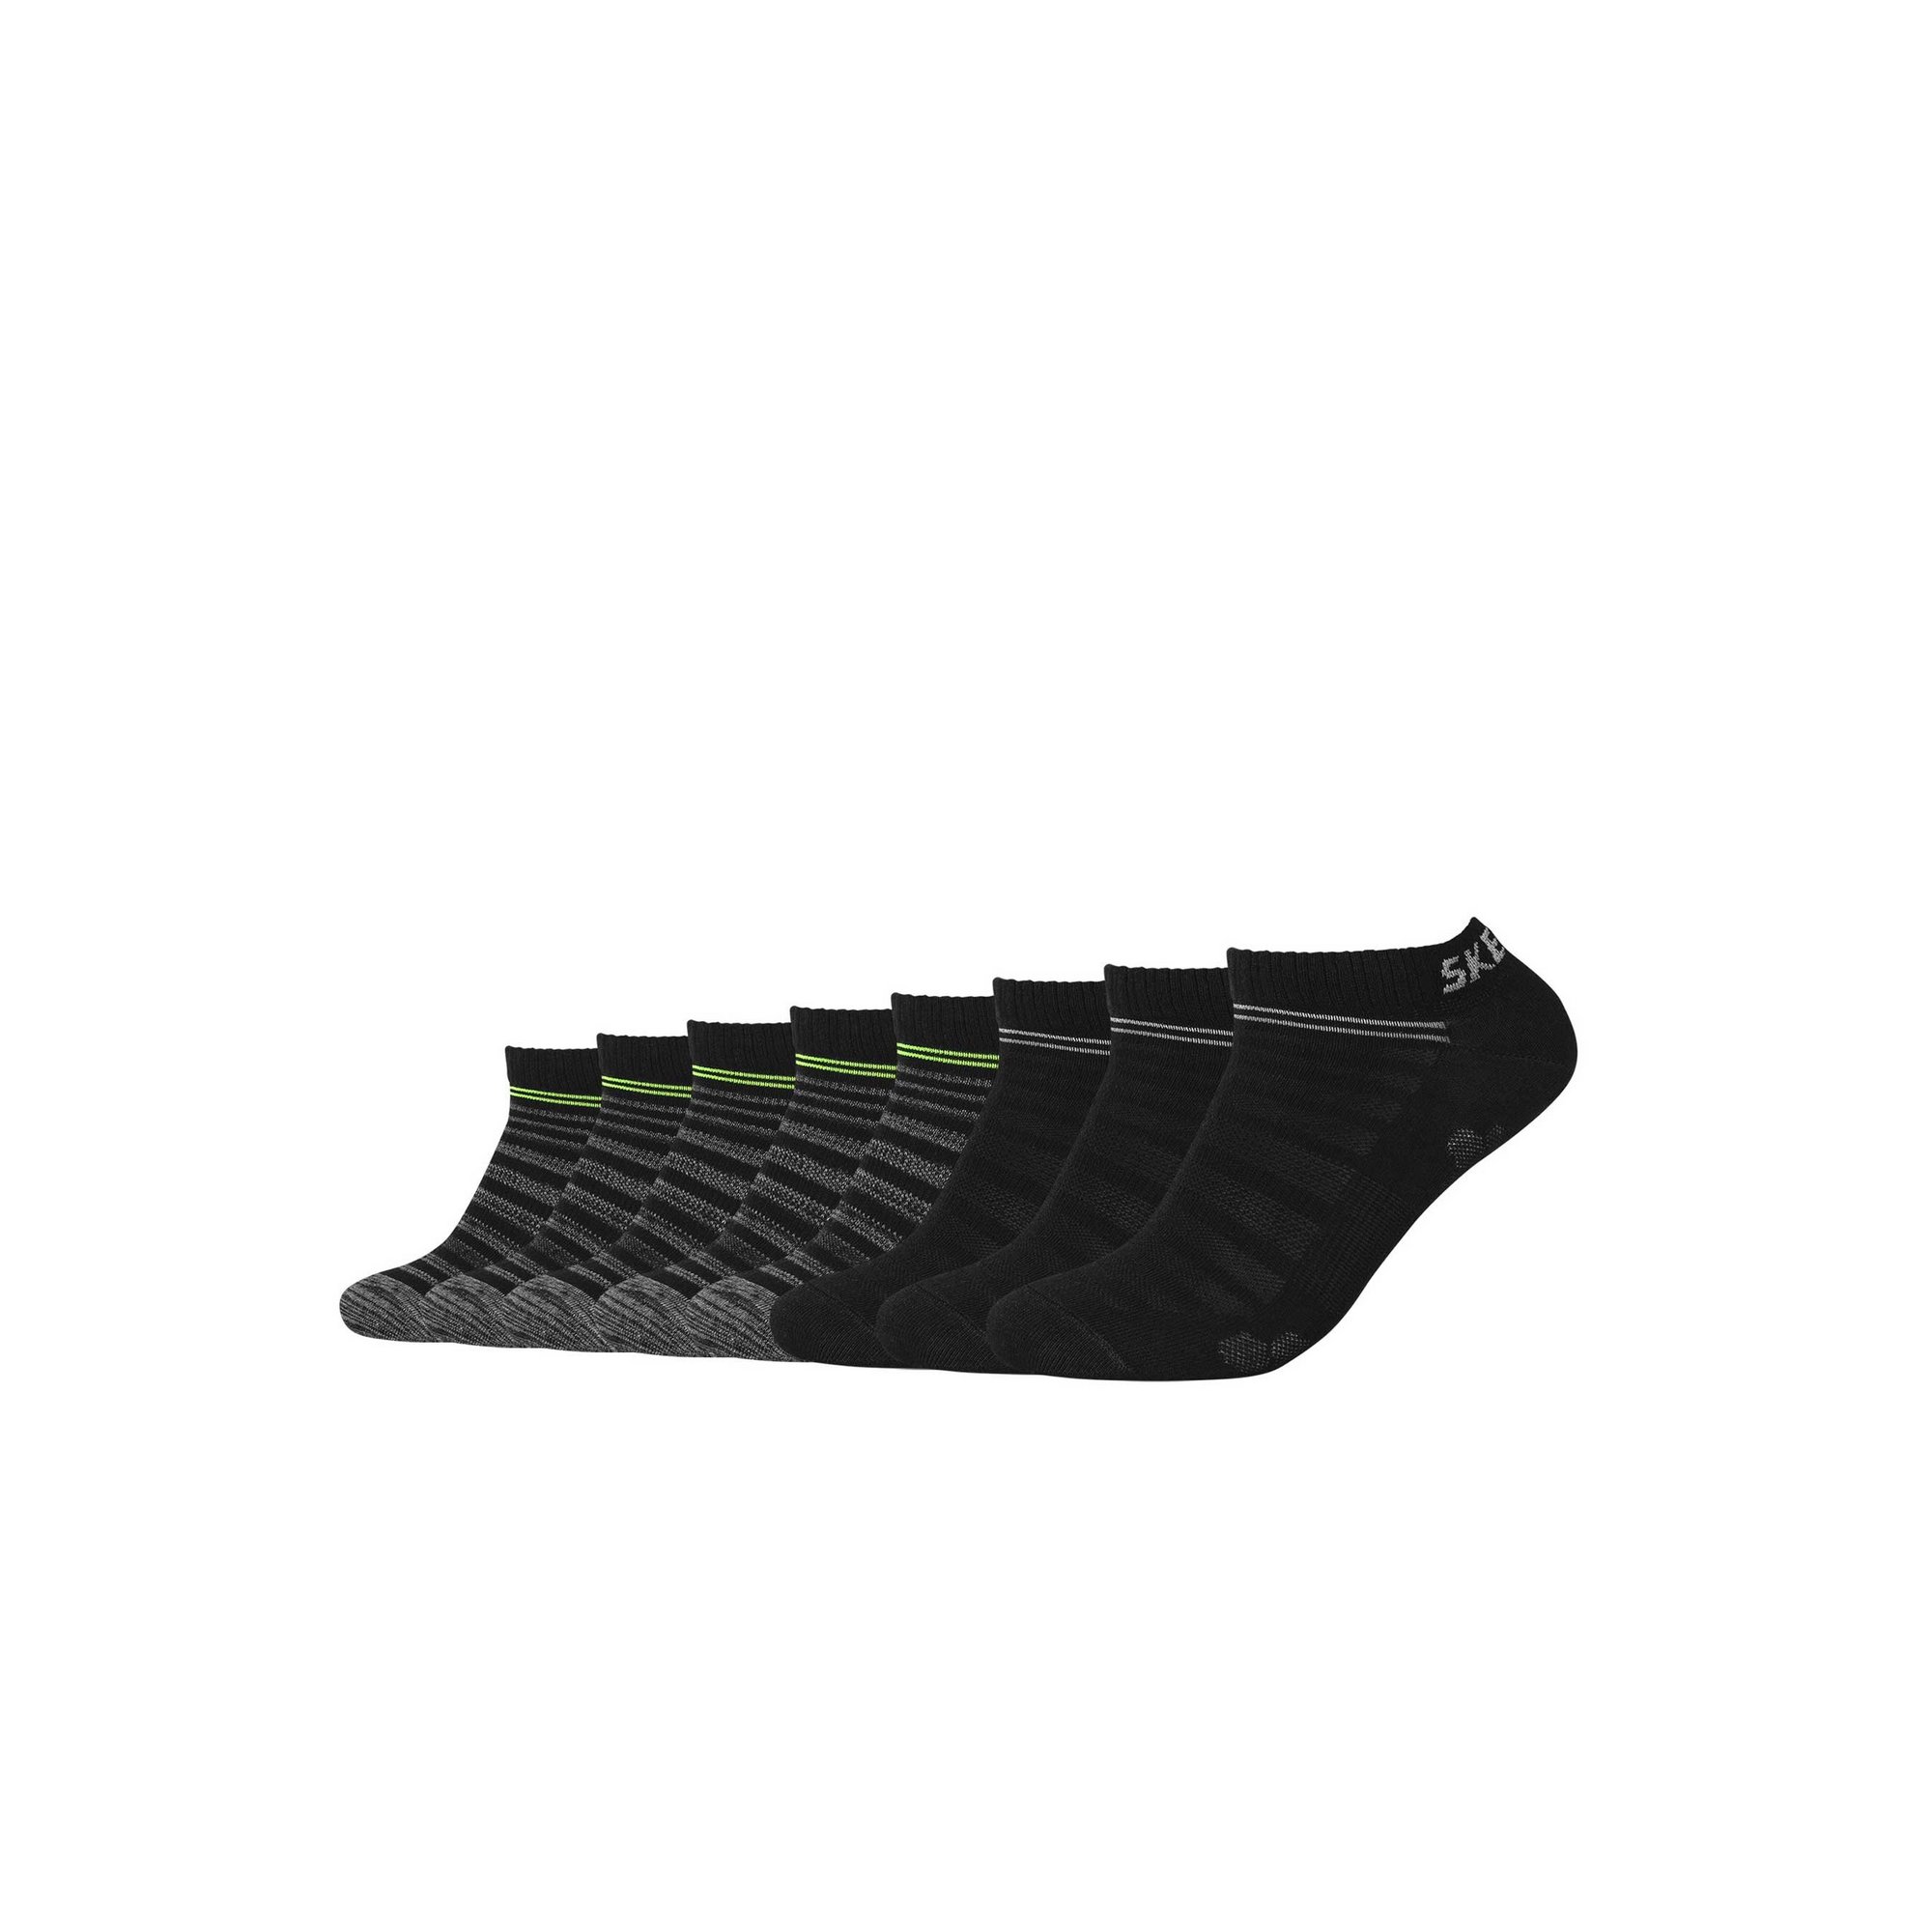 Skechers Pack of 8 Mesh Ventilation Black Trainer Socks